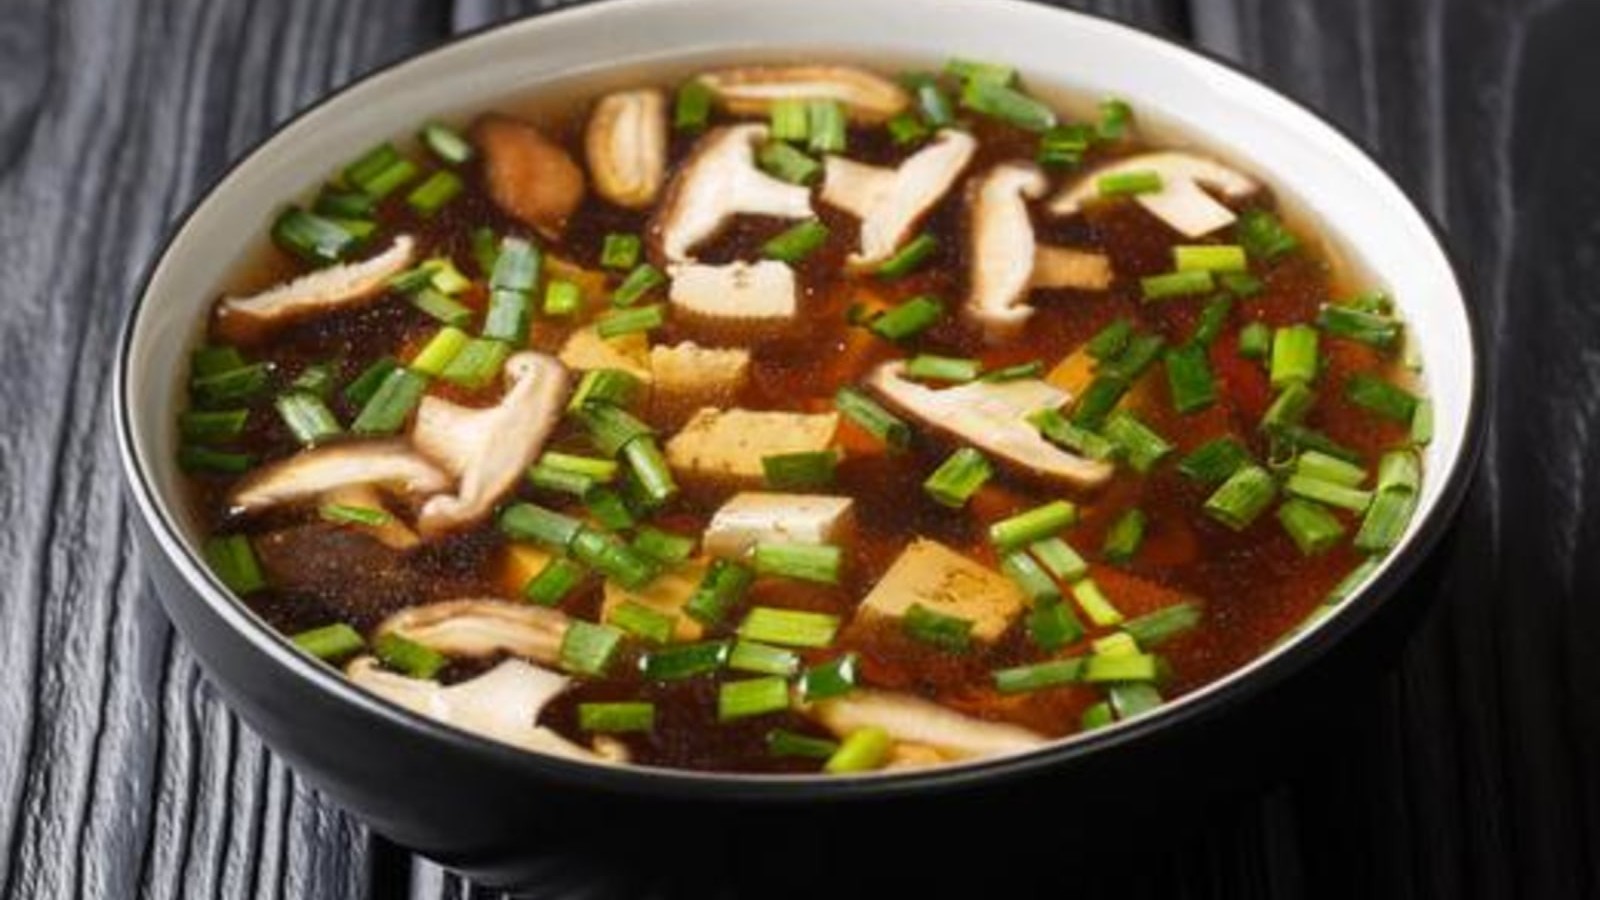 Image of Shiitake Mushroom Soup With Tofu and Enoki